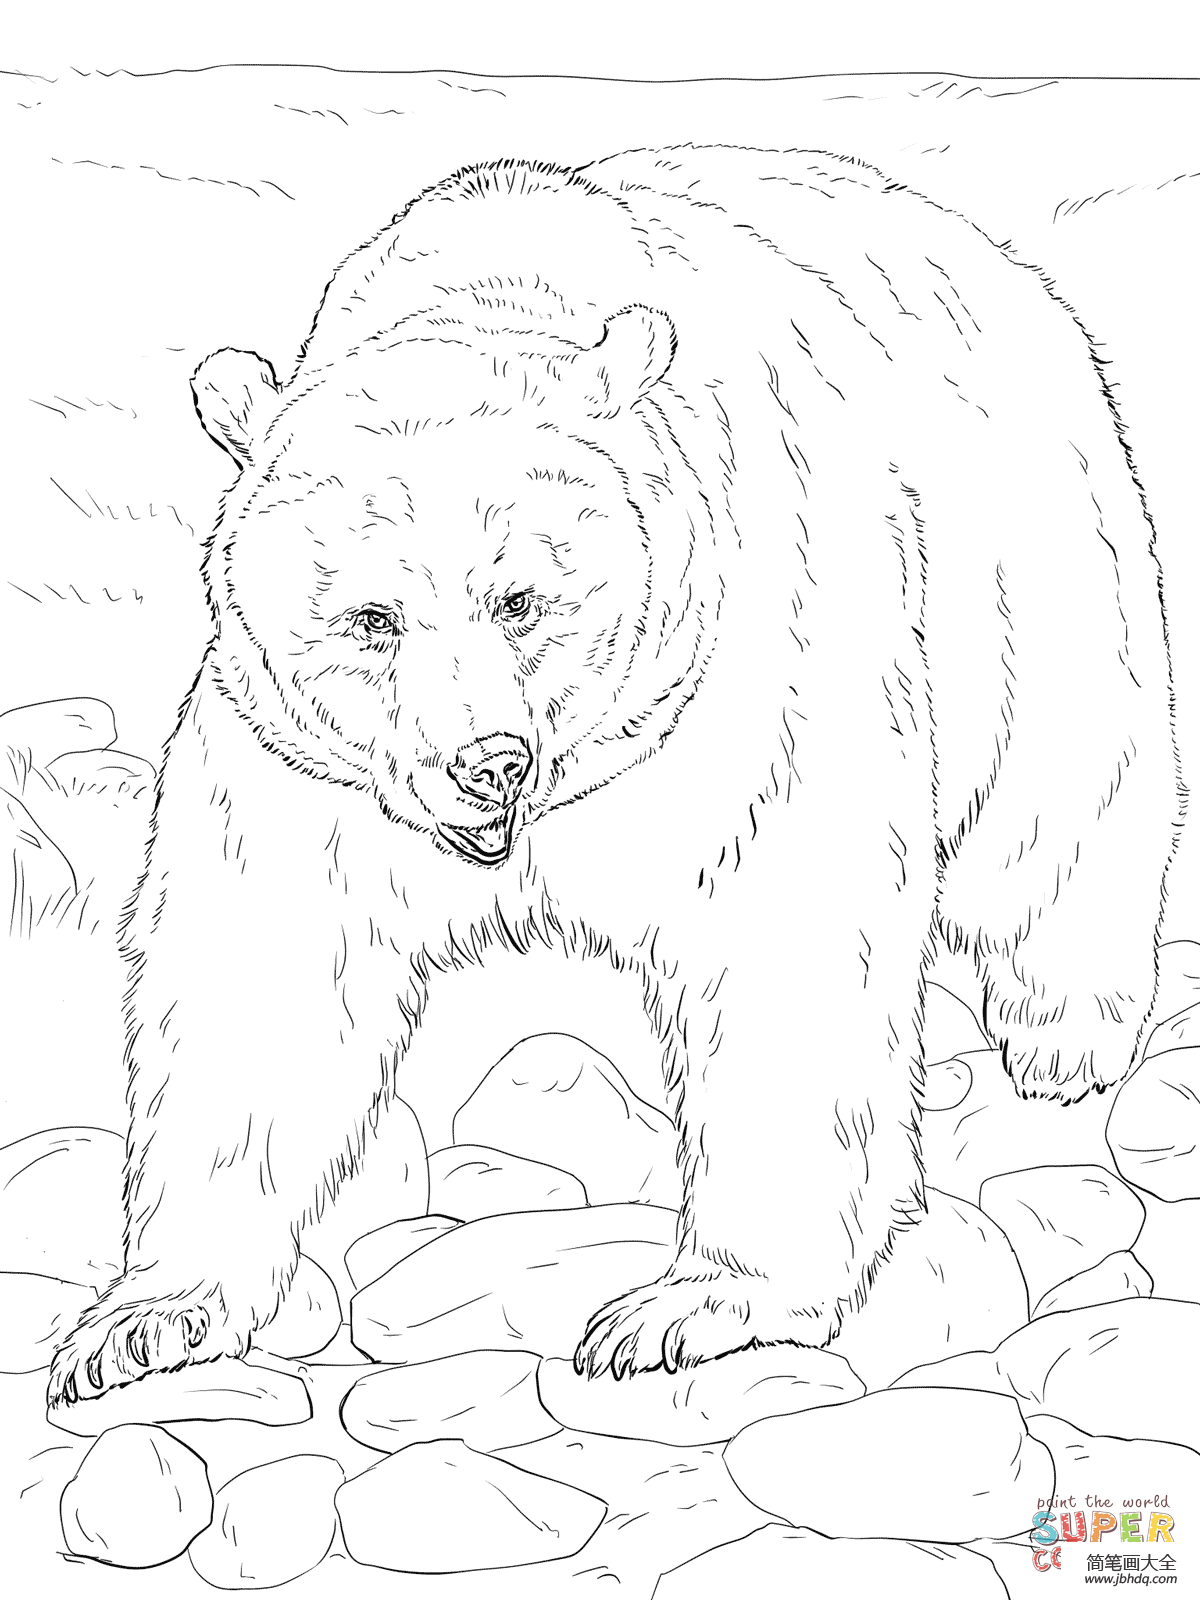 动物园里的棕熊